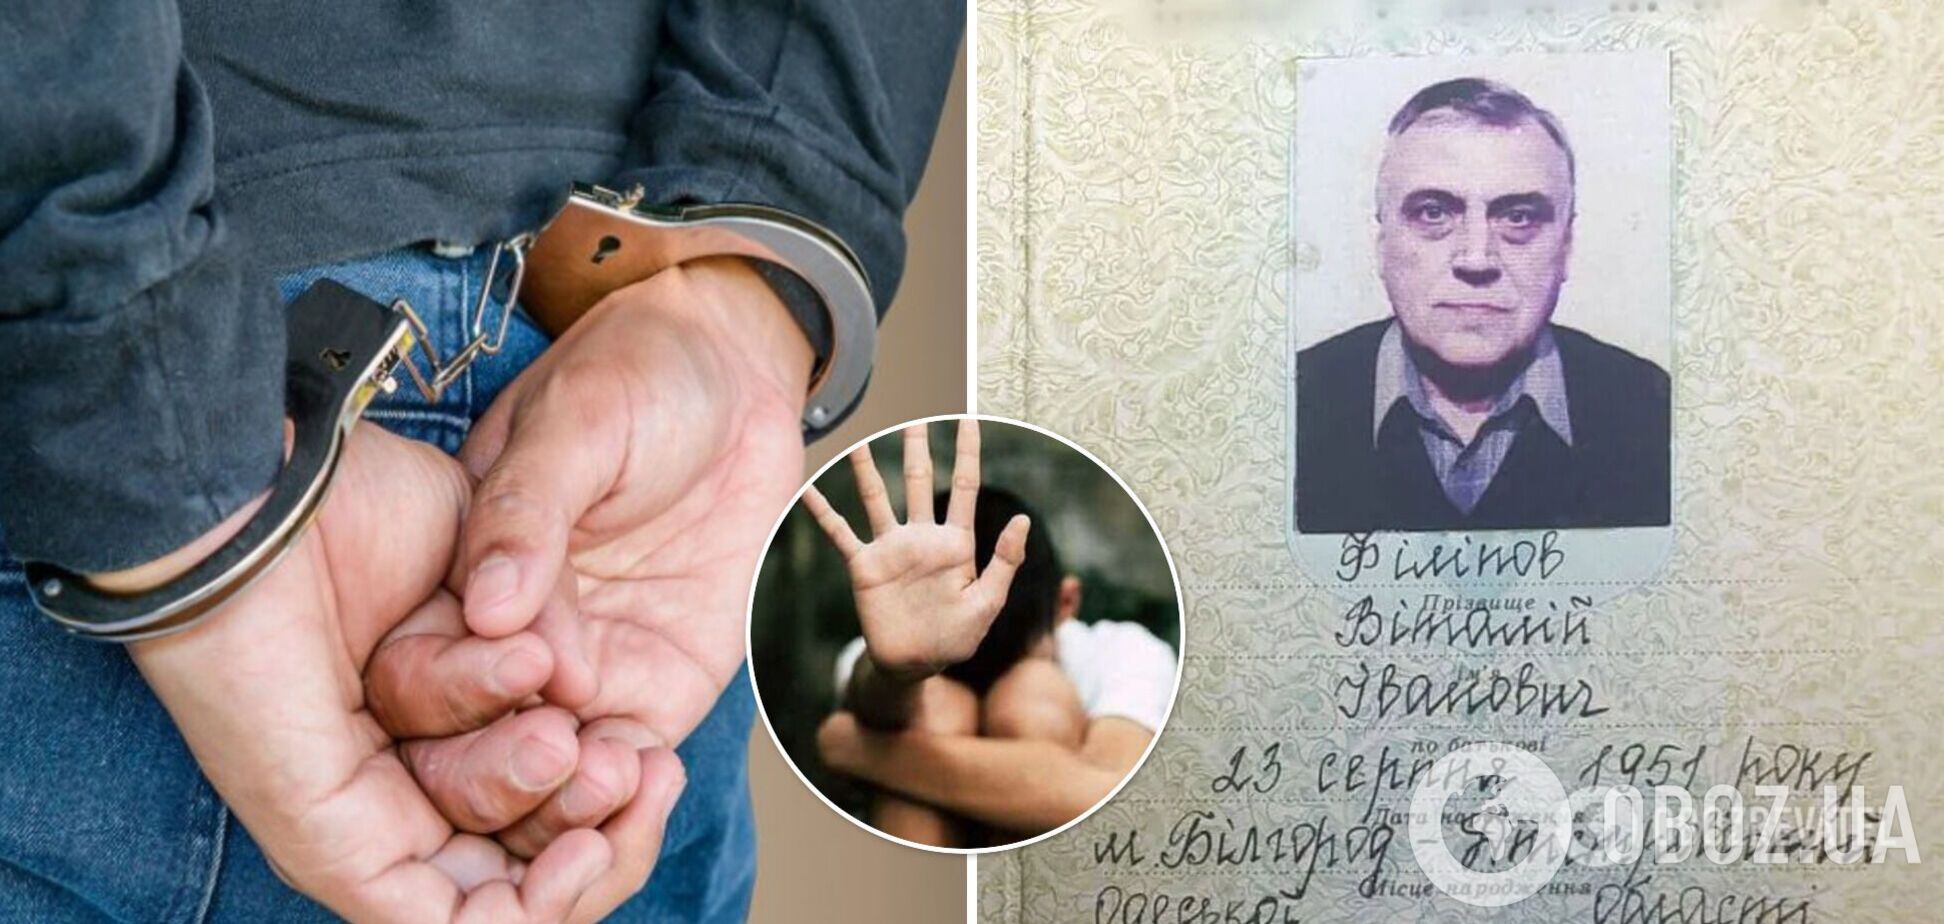 Загрожує довічне ув'язнення: на Одещині судитимуть педофіла, який поглумився над 13 дітьми